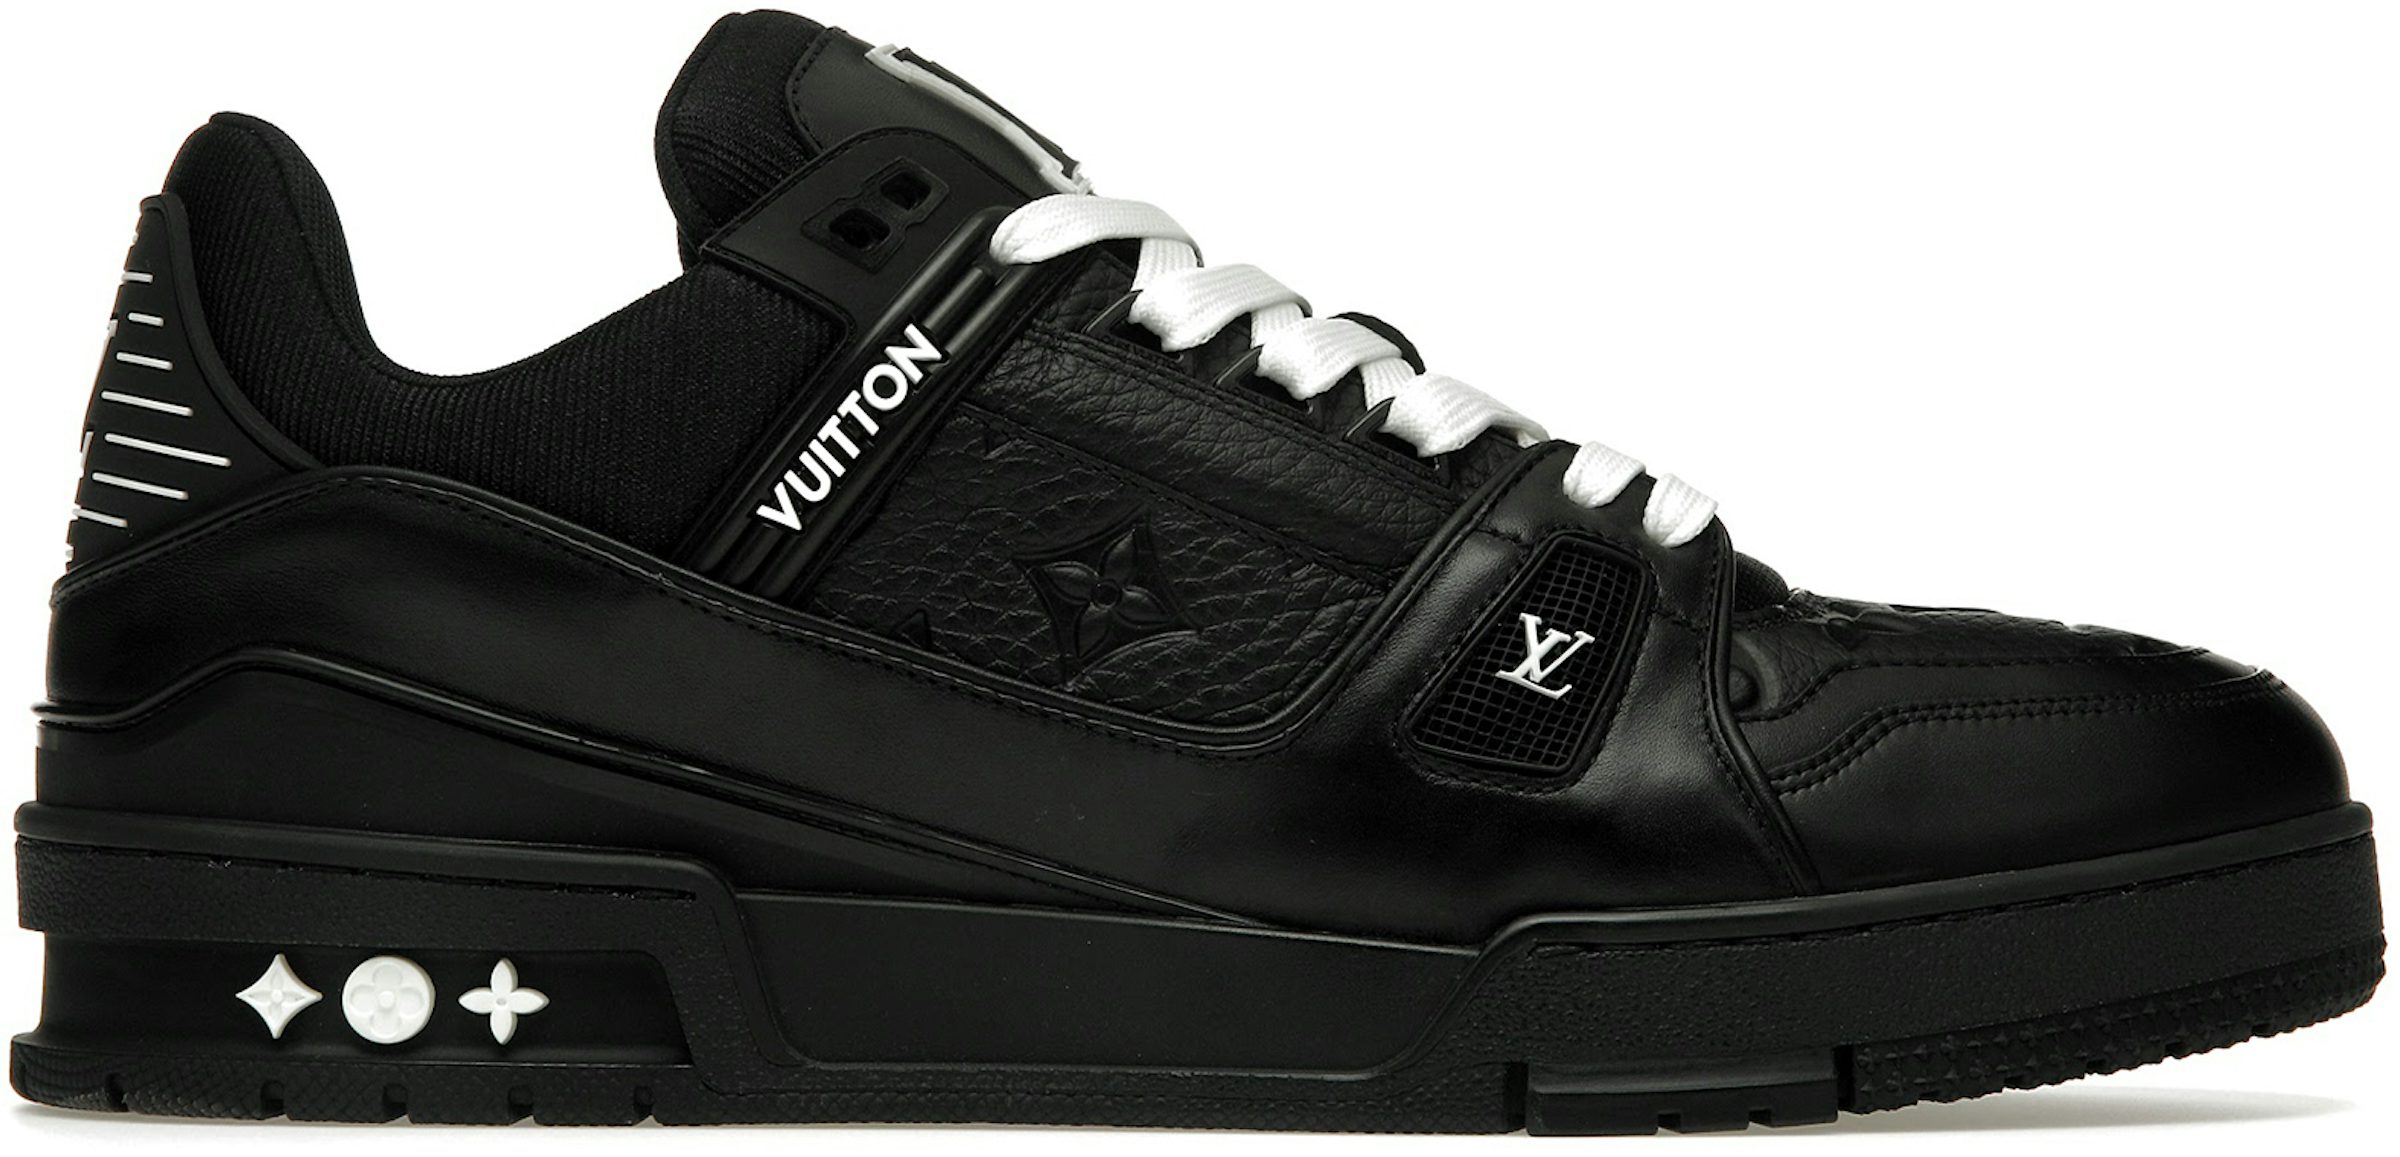 Louis Vuitton Size 11 Shoes - Release Date